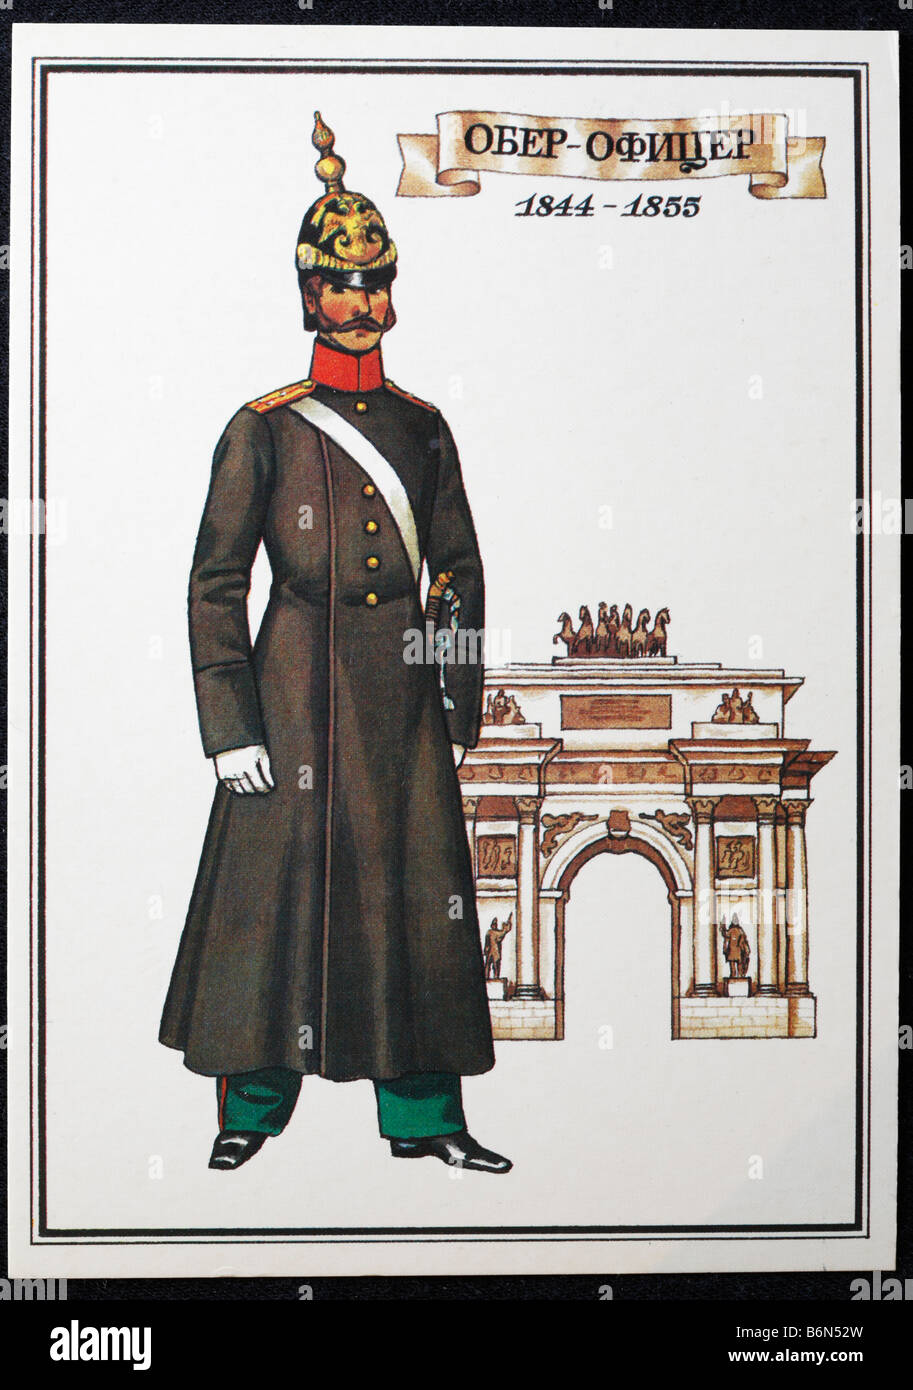 De l'uniforme de l'entreprise de grenadier regiment de l'armée russe (1844-1855), carte postale, URSS, 1986 Banque D'Images